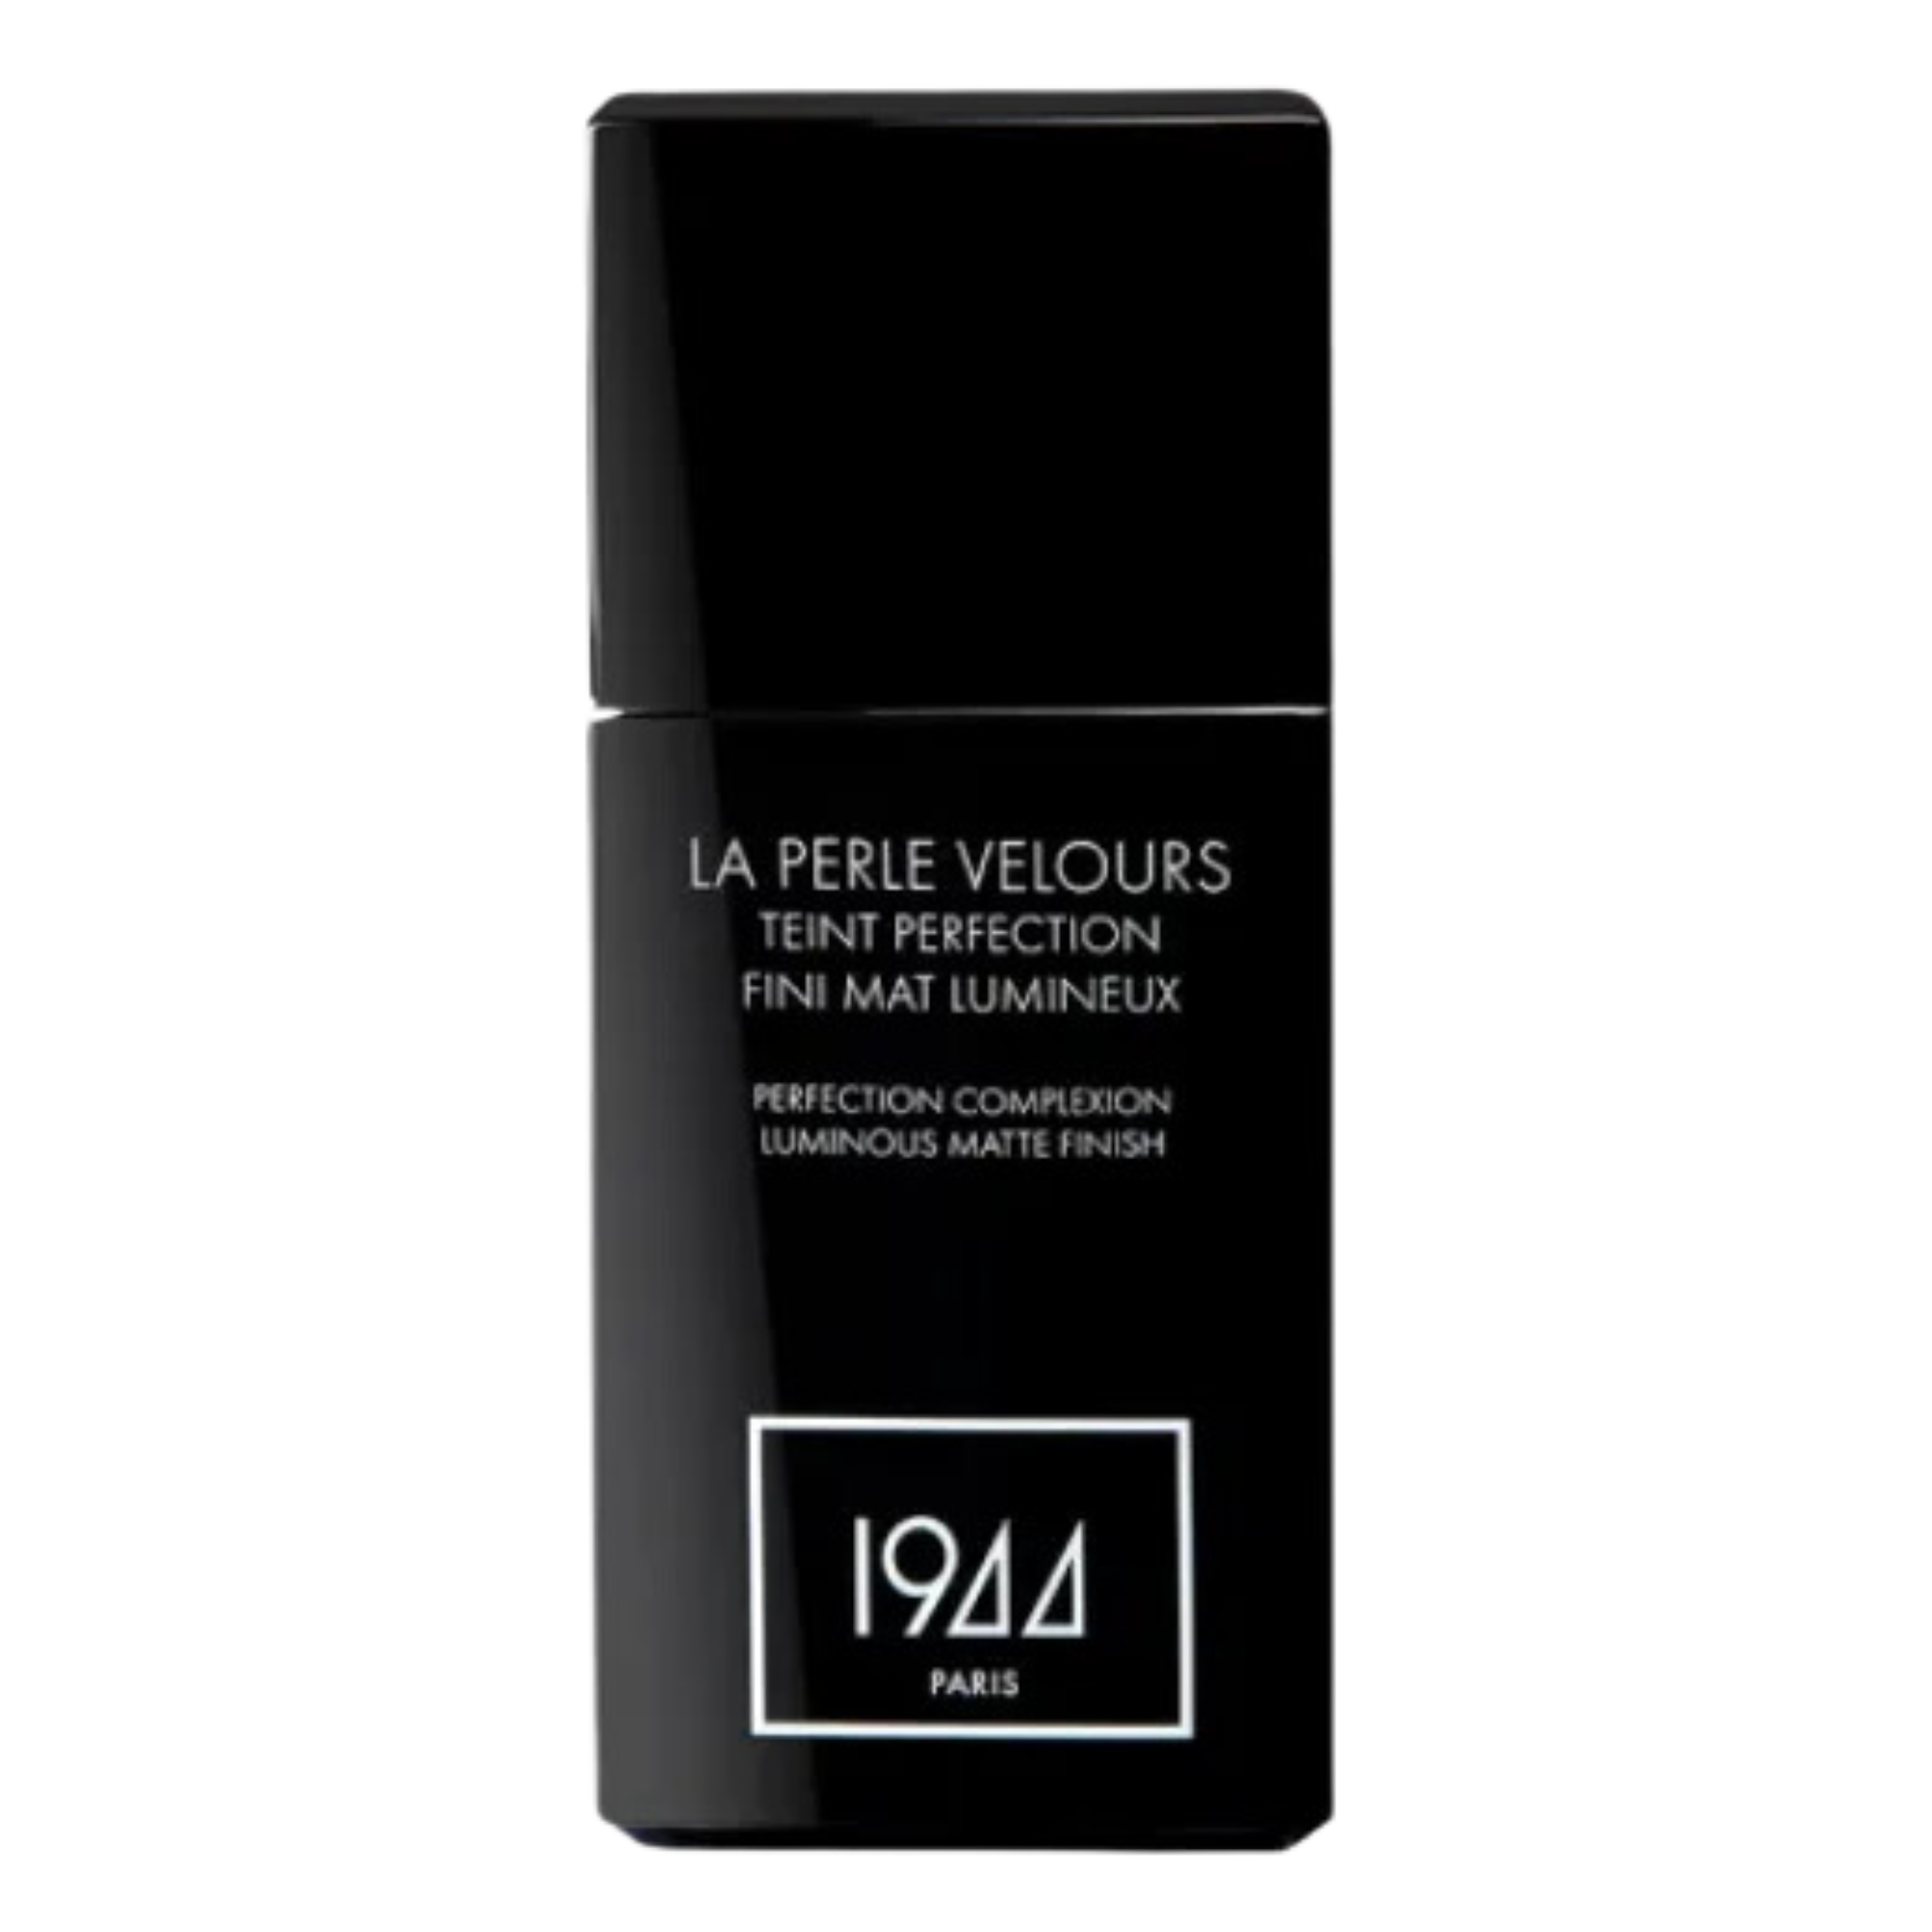 цена Тональный крем для лица ft207 бежевый пустынный 1944 Paris La Perle Velours, 30 мл